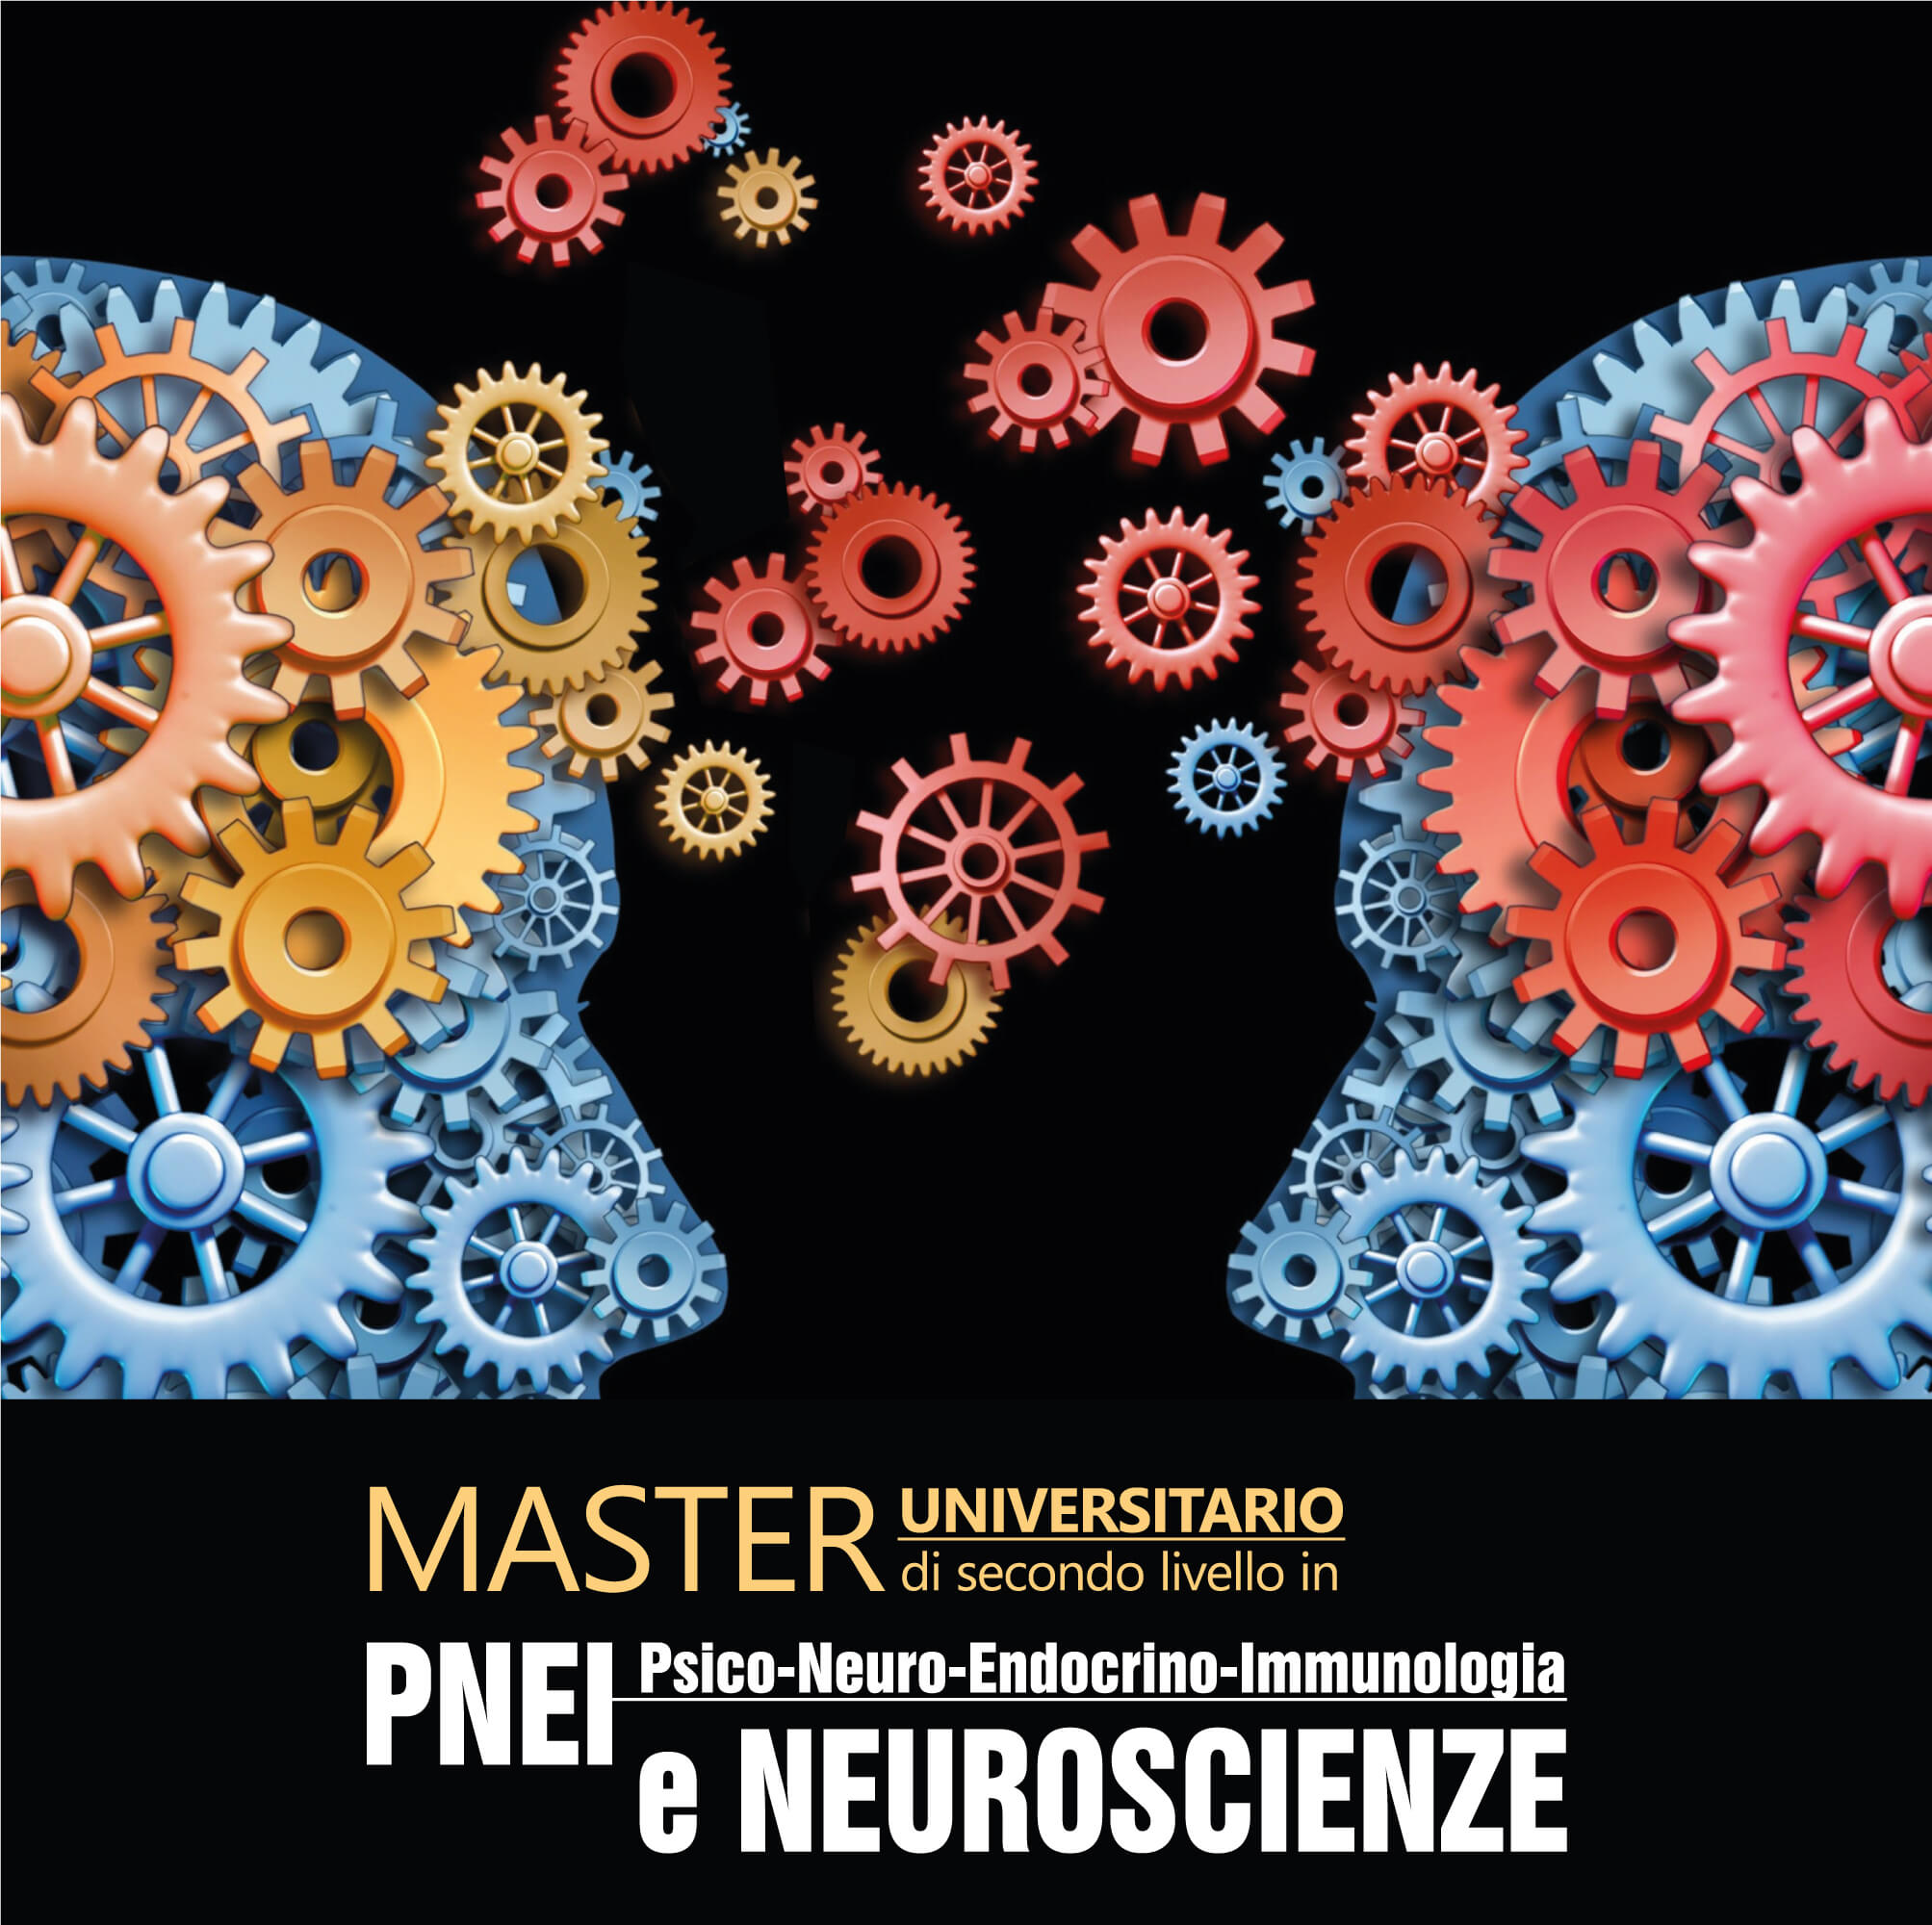 Psico-Neuro-Endocrino-Immunologia (PNEI) e Neuroscienze – Master universitario di secondo livello